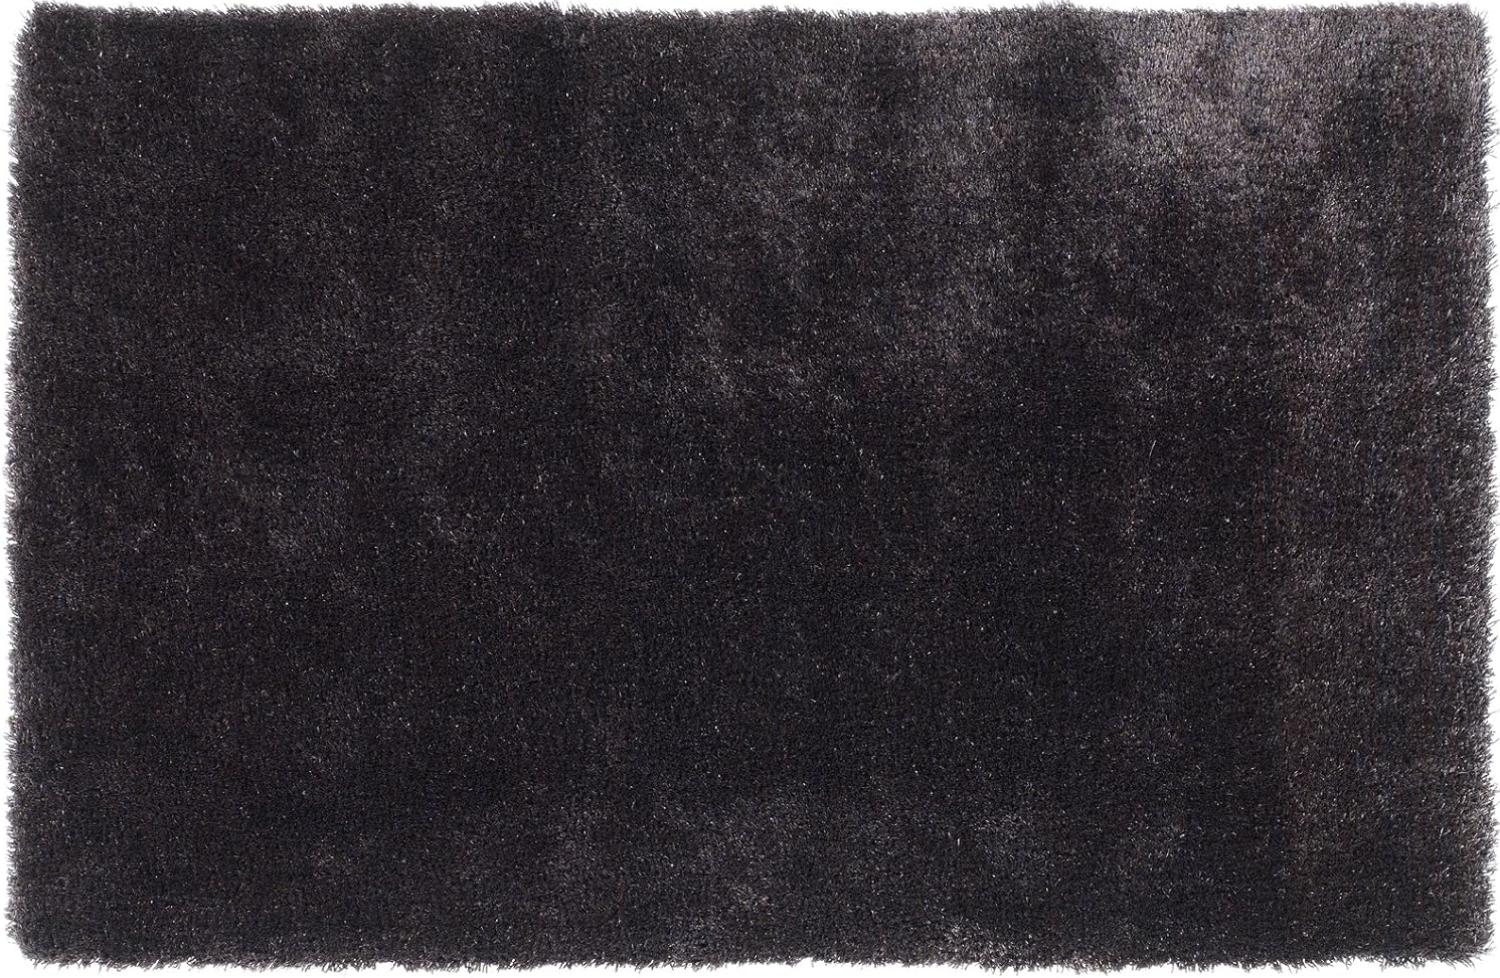 Teppich- Shaggy Hochflor Teppich ideal für alle Räume Schwarz, 230 x 160 cm Bild 1